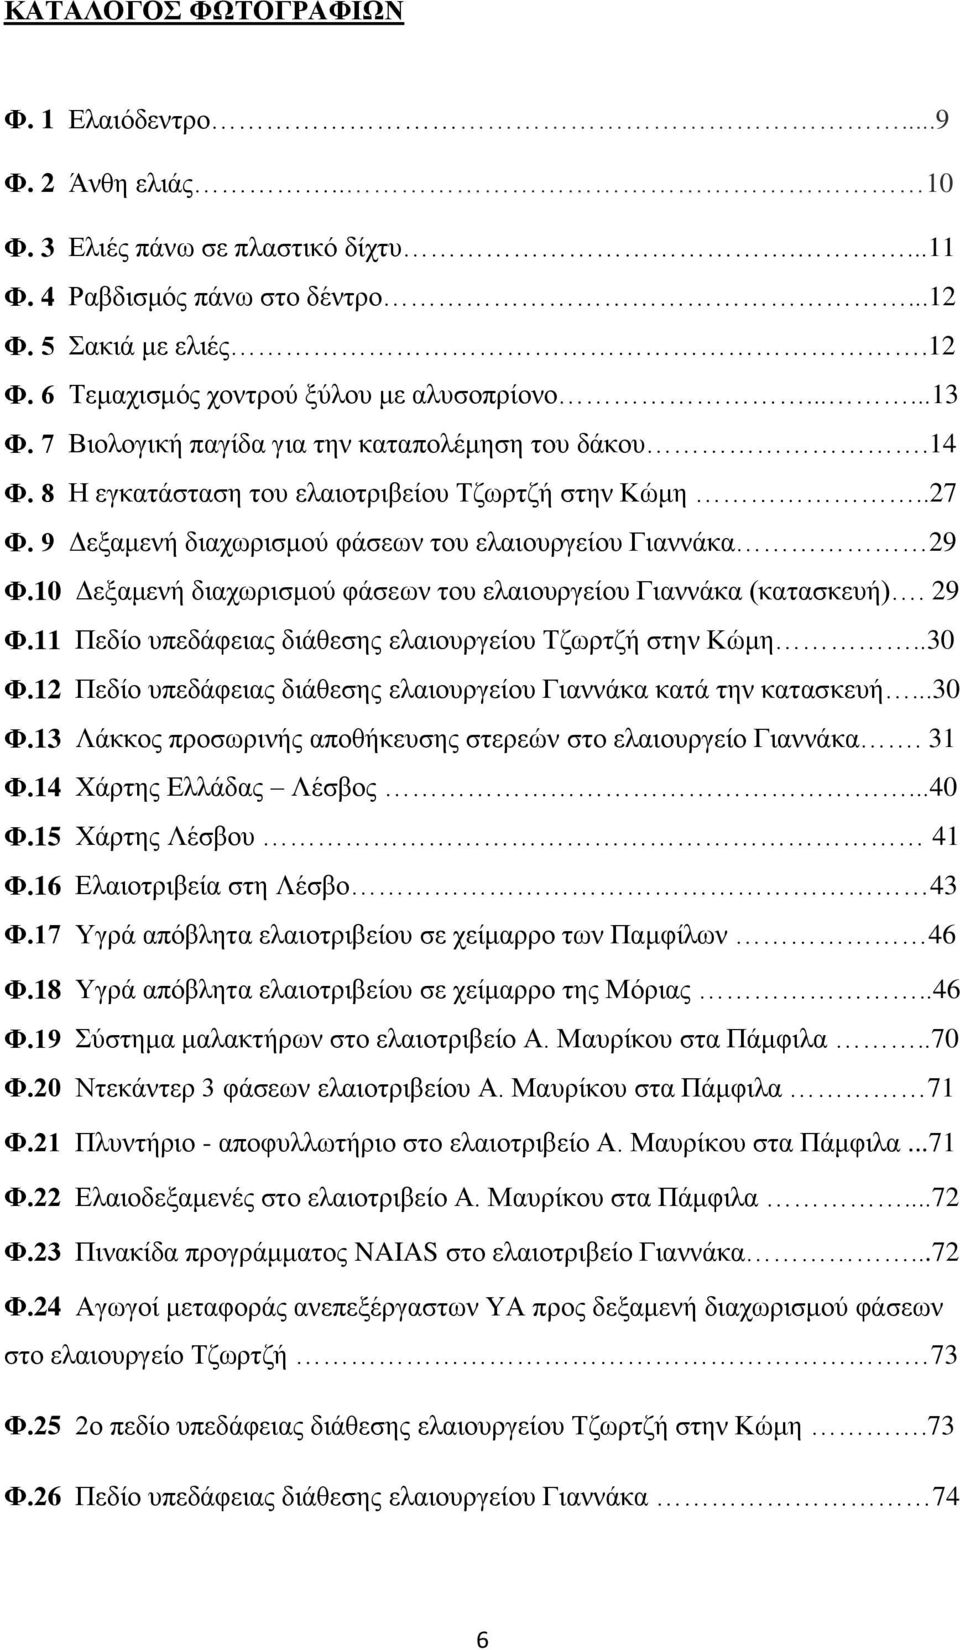 10 Δεξαμενή διαχωρισμού φάσεων του ελαιουργείου Γιαννάκα (κατασκευή). 29 Φ.11 Πεδίο υπεδάφειας διάθεσης ελαιουργείου Τζωρτζή στην Κώμη..30 Φ.